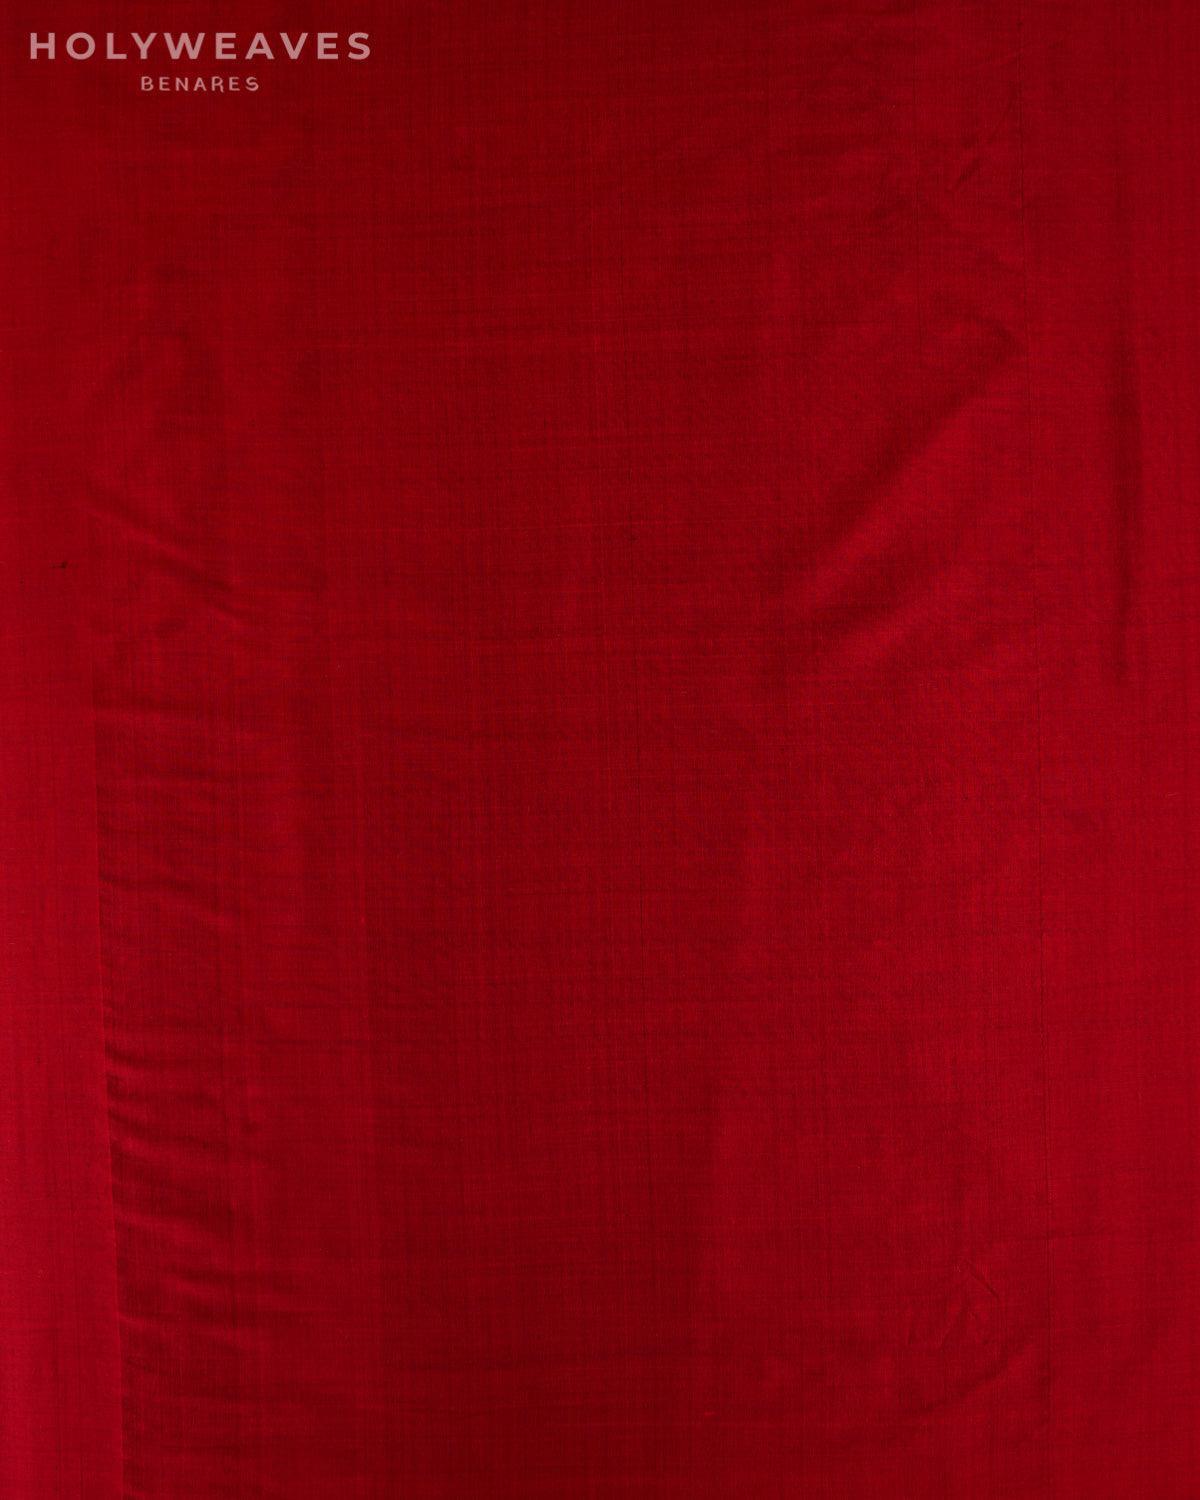 Maroon Banarasi Plain Woven Spun Silk Fabric - By HolyWeaves, Benares